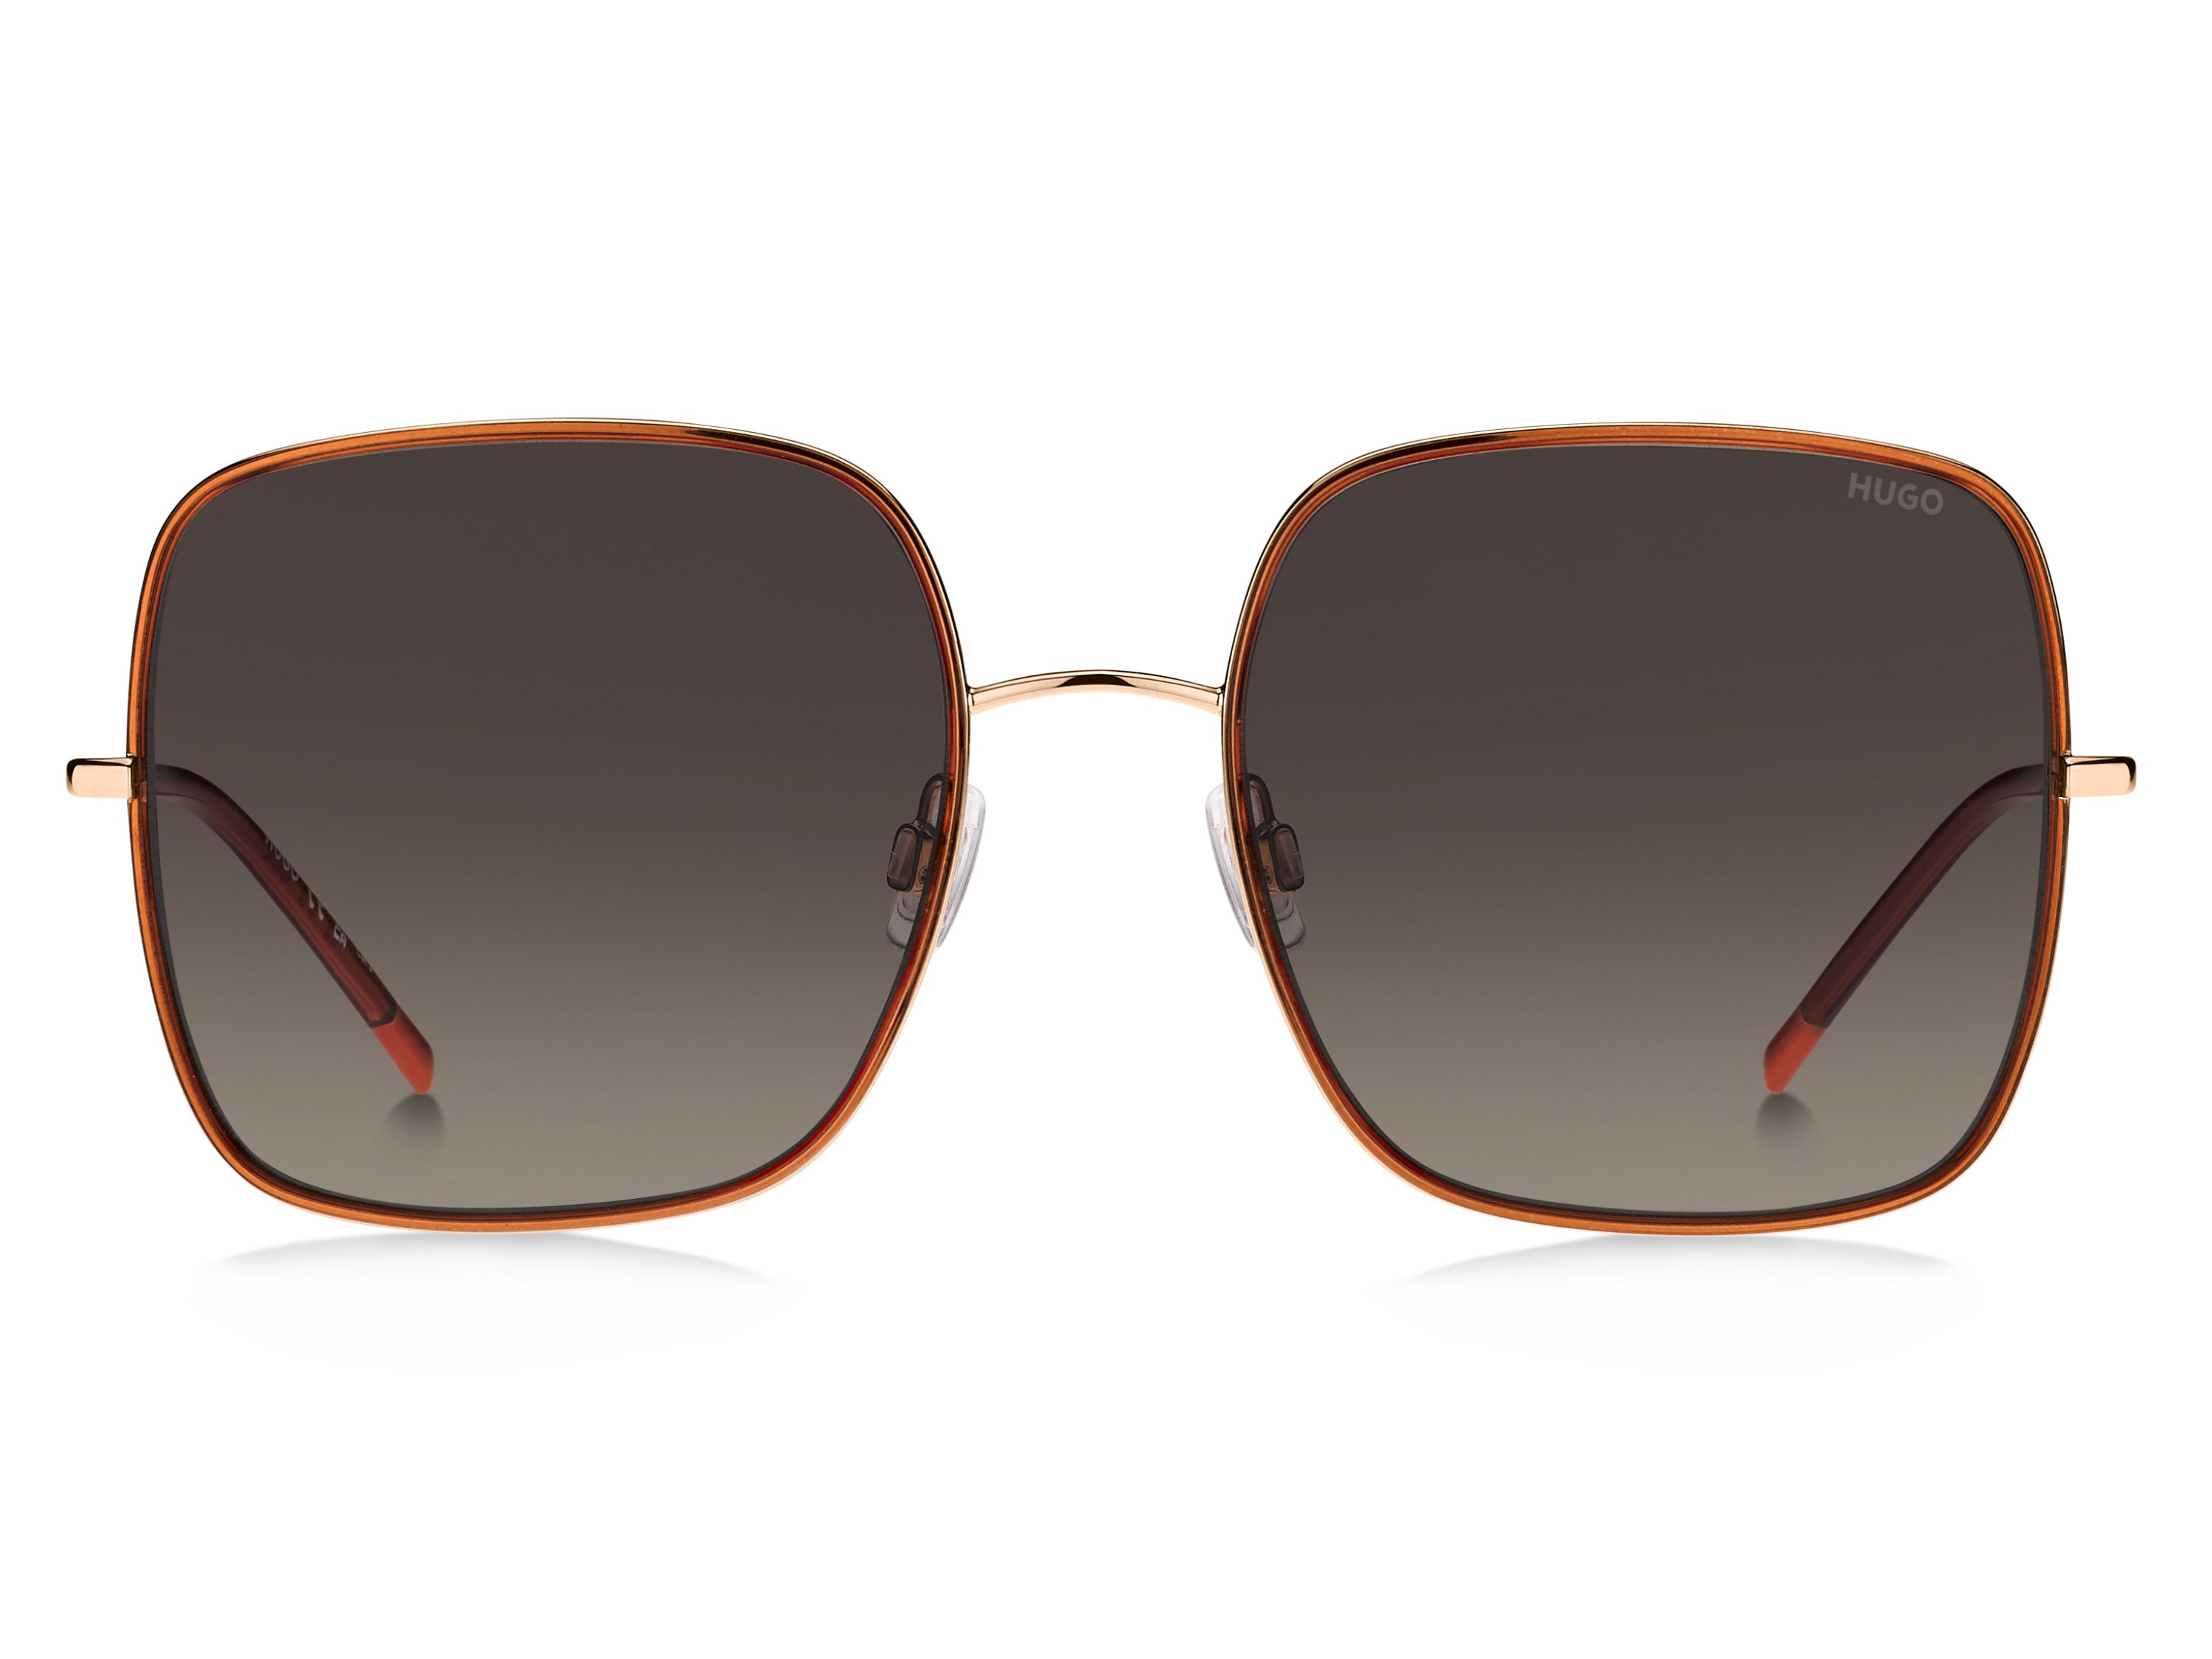 Das Bild zeigt die Sonnenbrille HG1293/S OFY von der Marke Hugo in gold/orange.